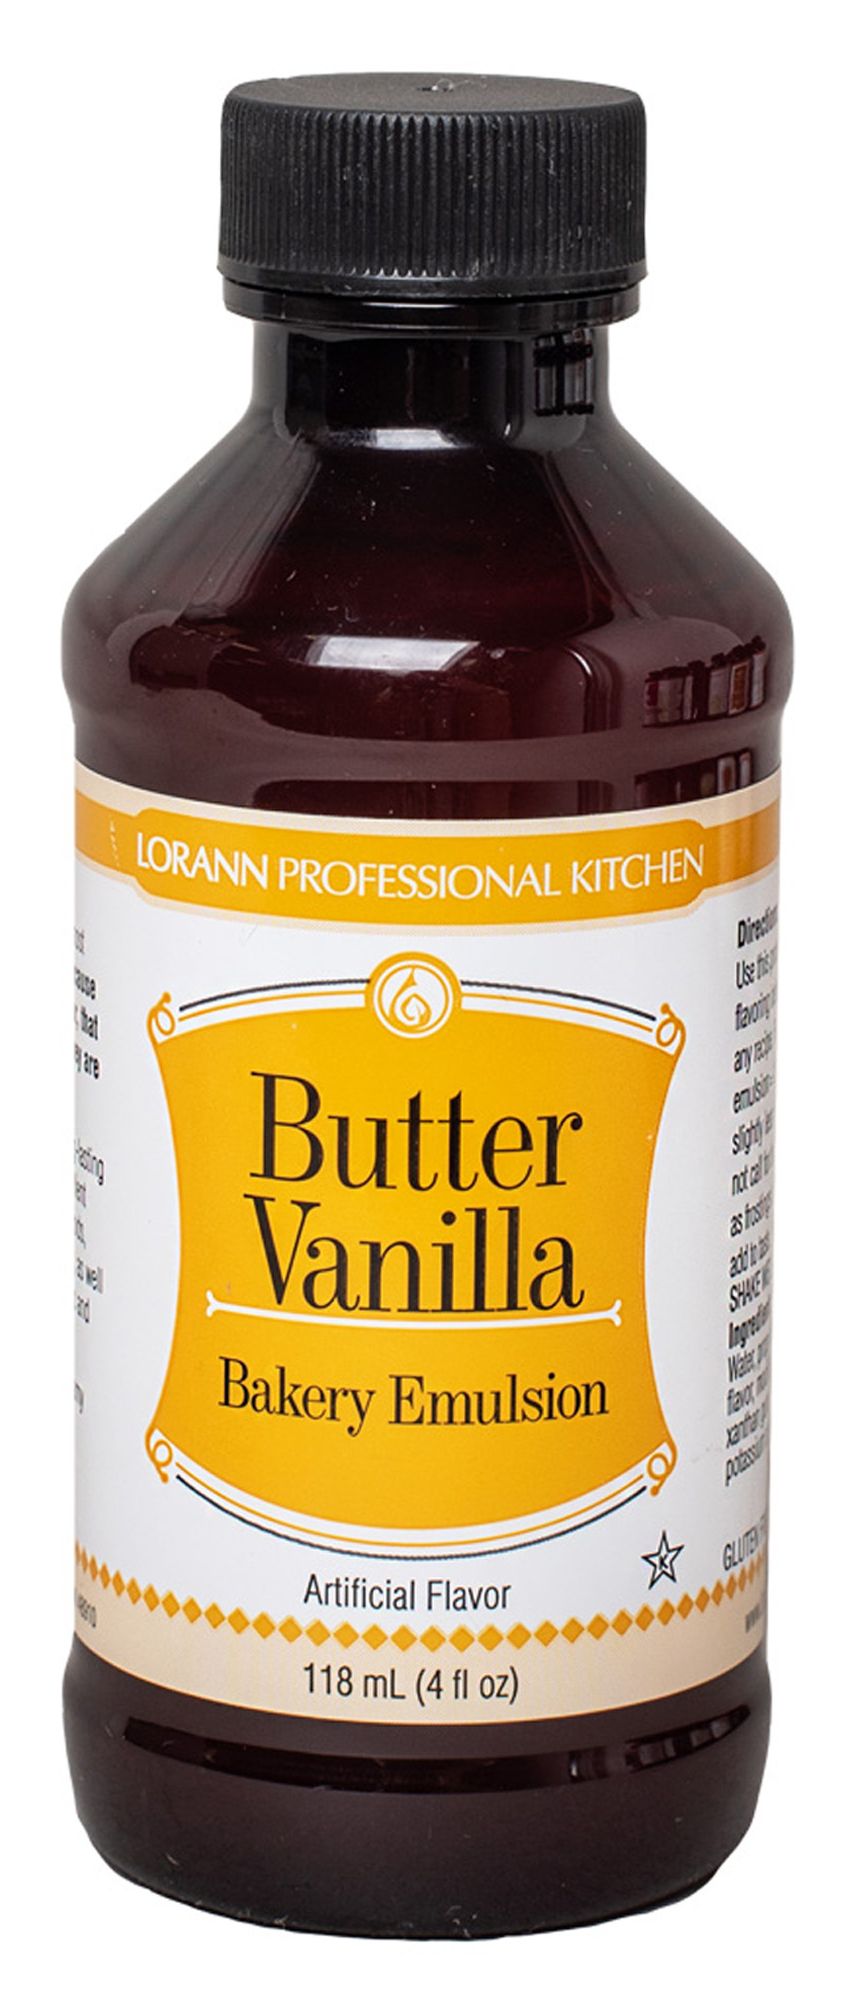 #Flavor_Butter Vanilla #Size_4 fl oz.